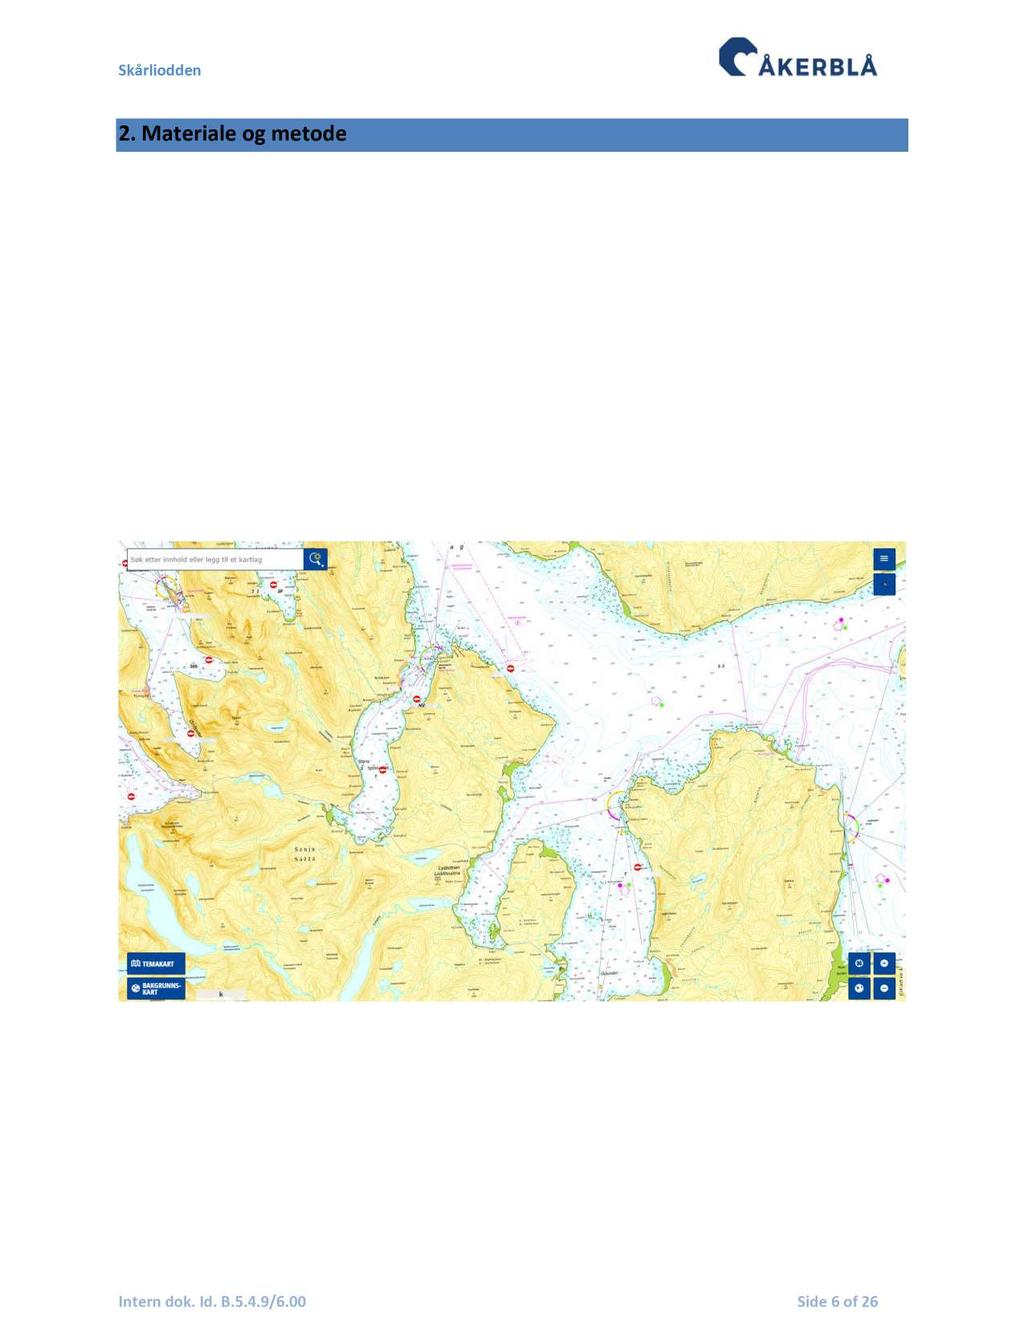 2. Materiale og metode 2.1 Område og stasjonsvalg Oppdrettslokaliteten Skårliodden ligger nordøst på Senja, på grensen mellom Gisundet og Malangen, Lenvik kommune i Troms.